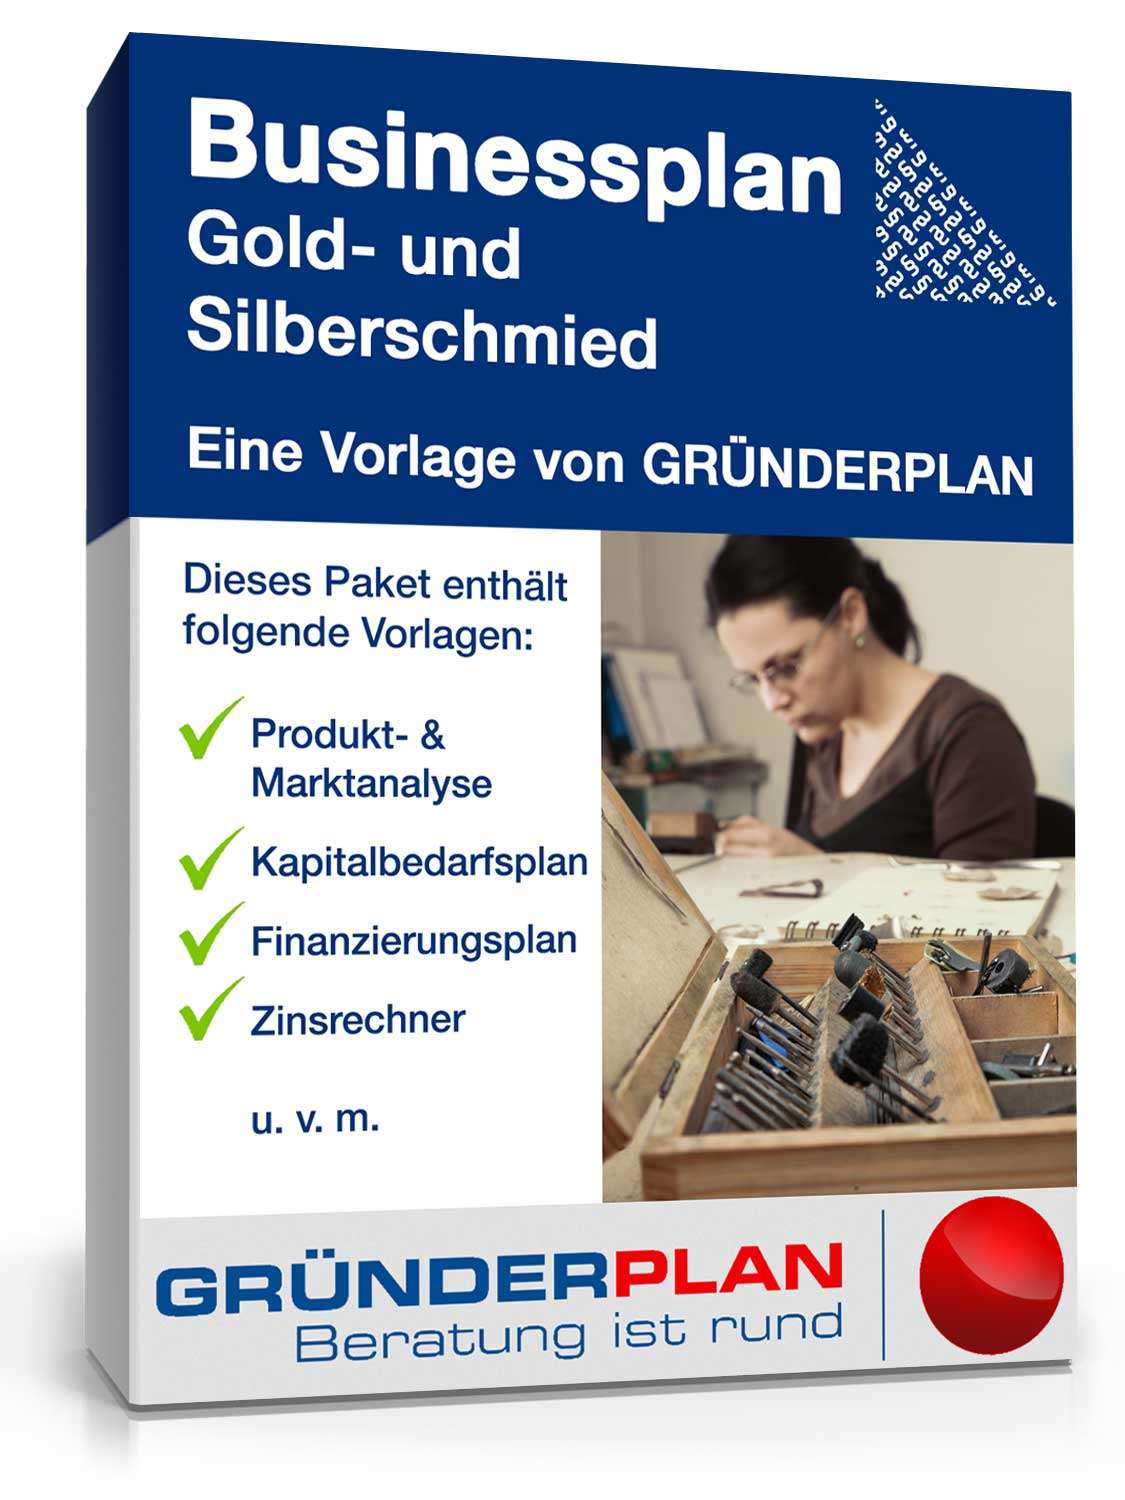 Hauptbild des Produkts: Businessplan Gold- und Silberschmied von Gründerplan